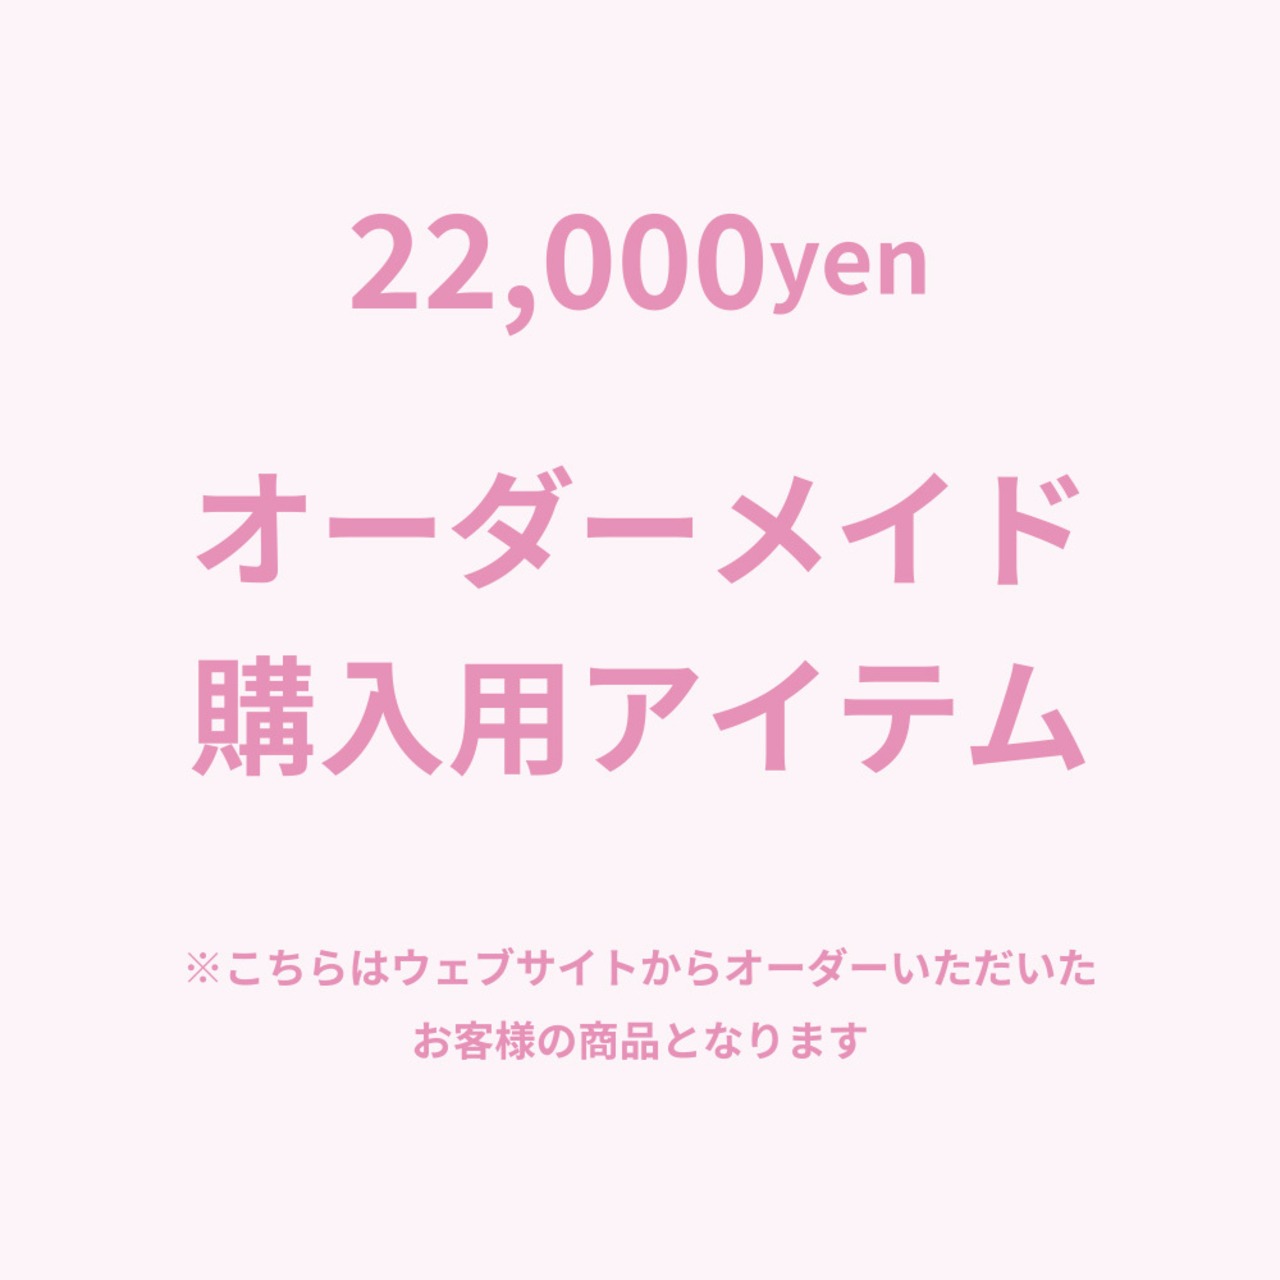 オーダーメイド【22,000】